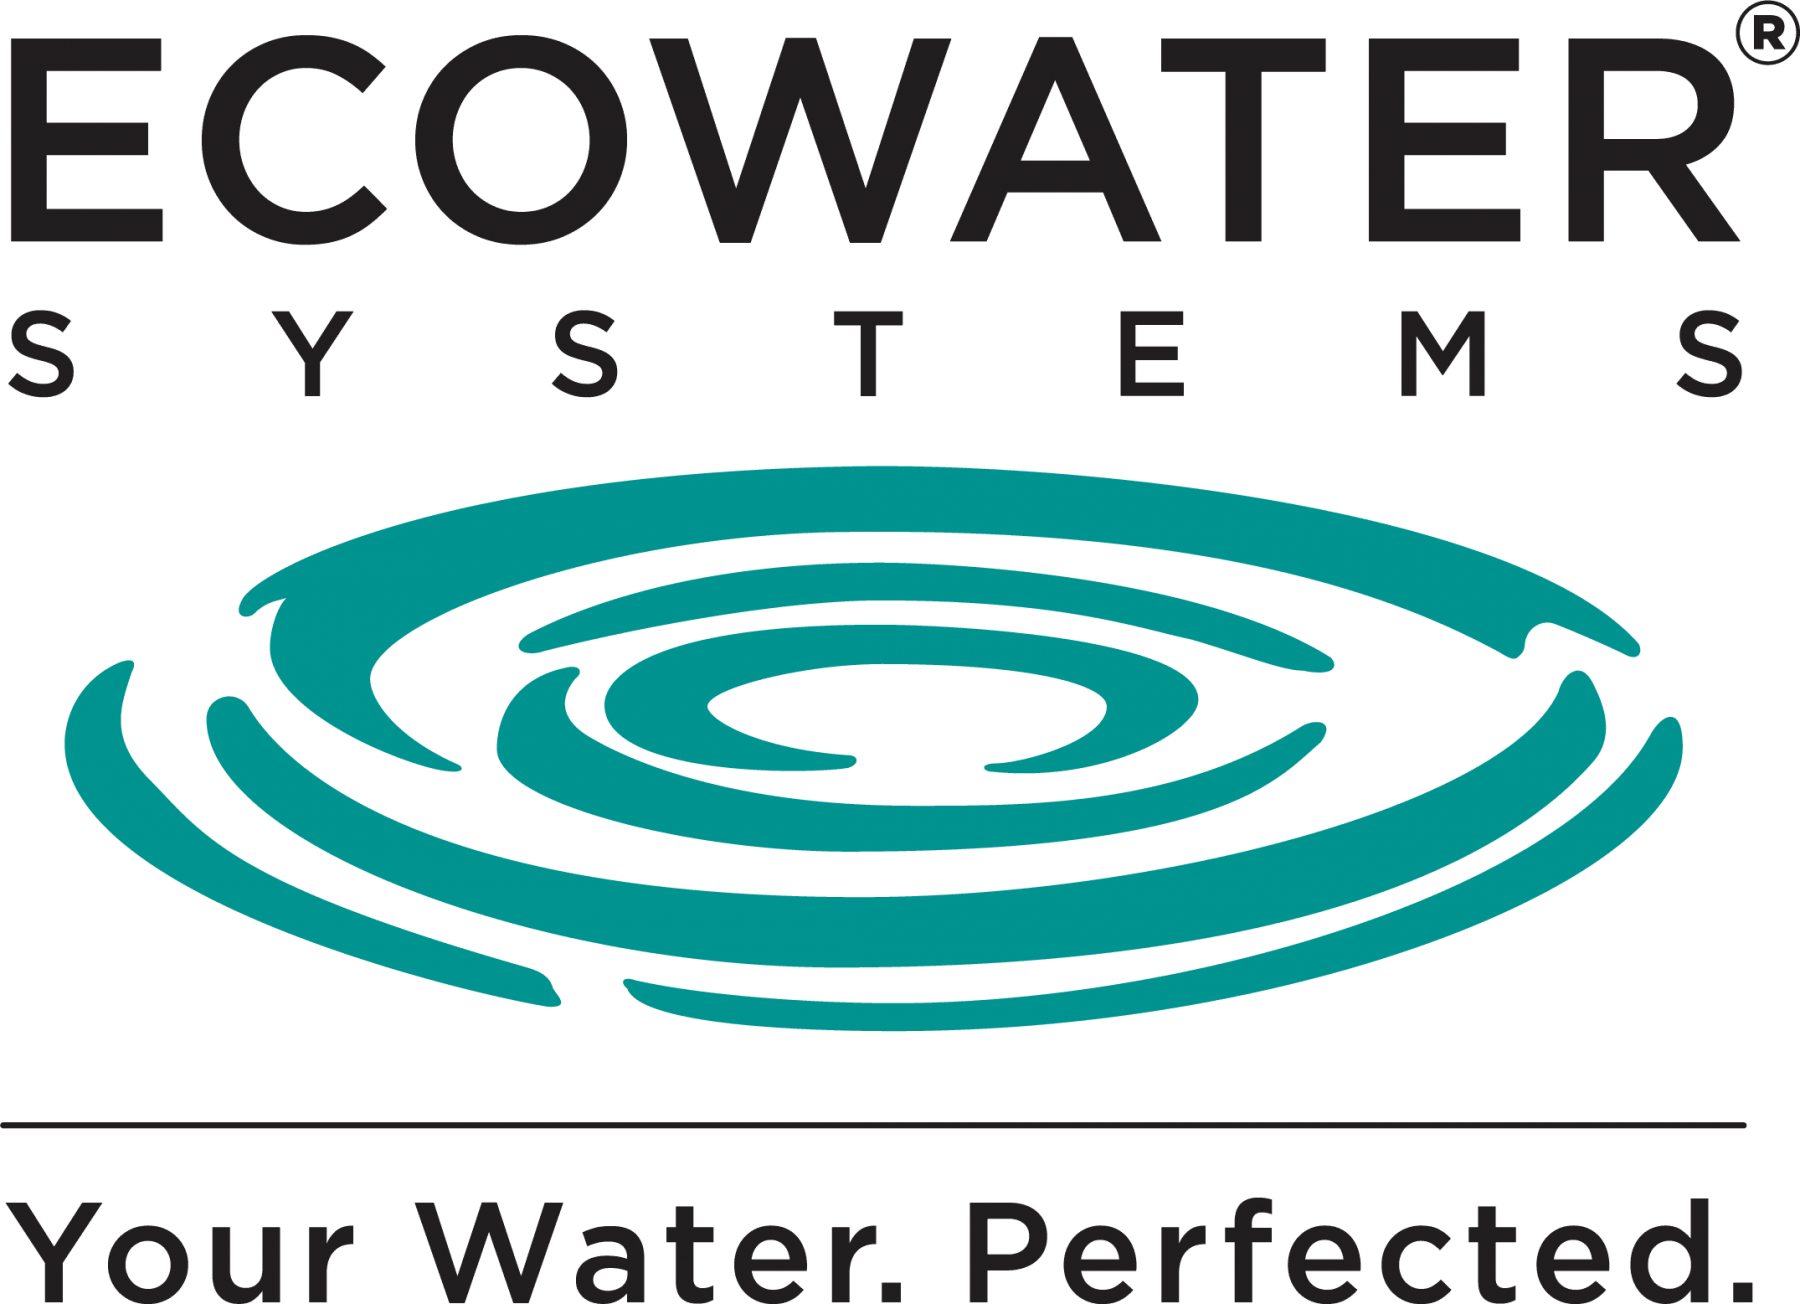 Ecowater Systems - adoucisseurs d'eau, appareils de traitement de l'eau